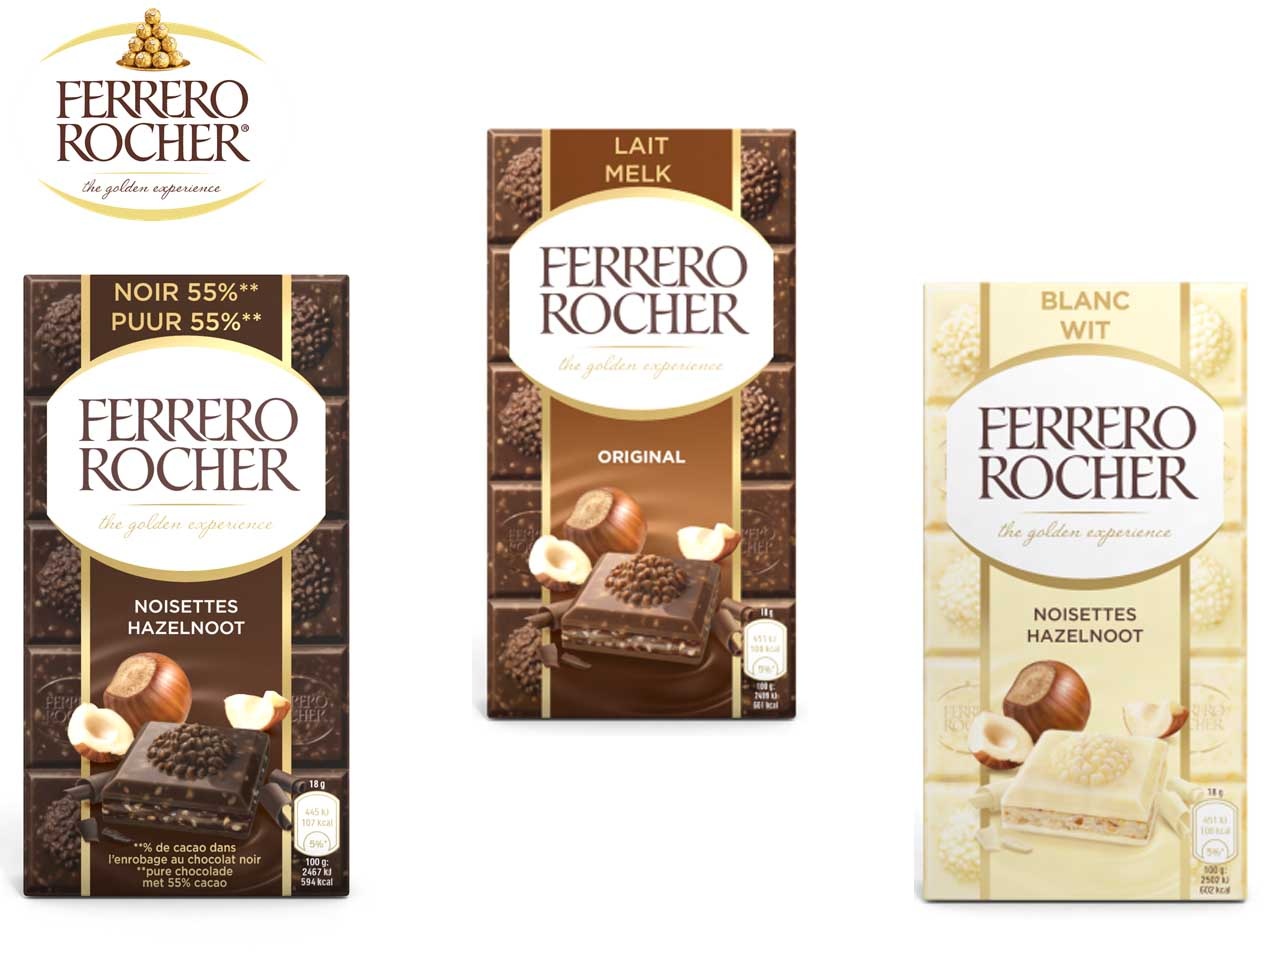 Ferrero Rocher poursuit sa diversification avec sa nouvelle offre de tablettes